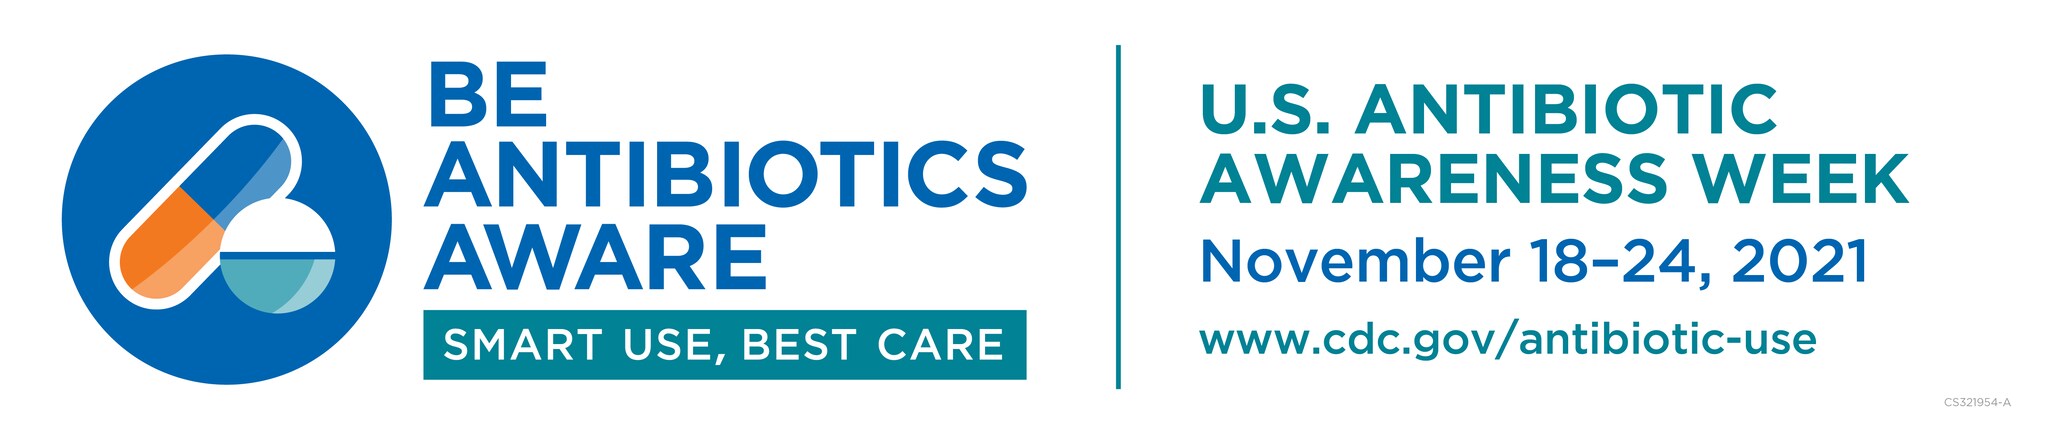 U.S. Antibiotic Awareness Week banner